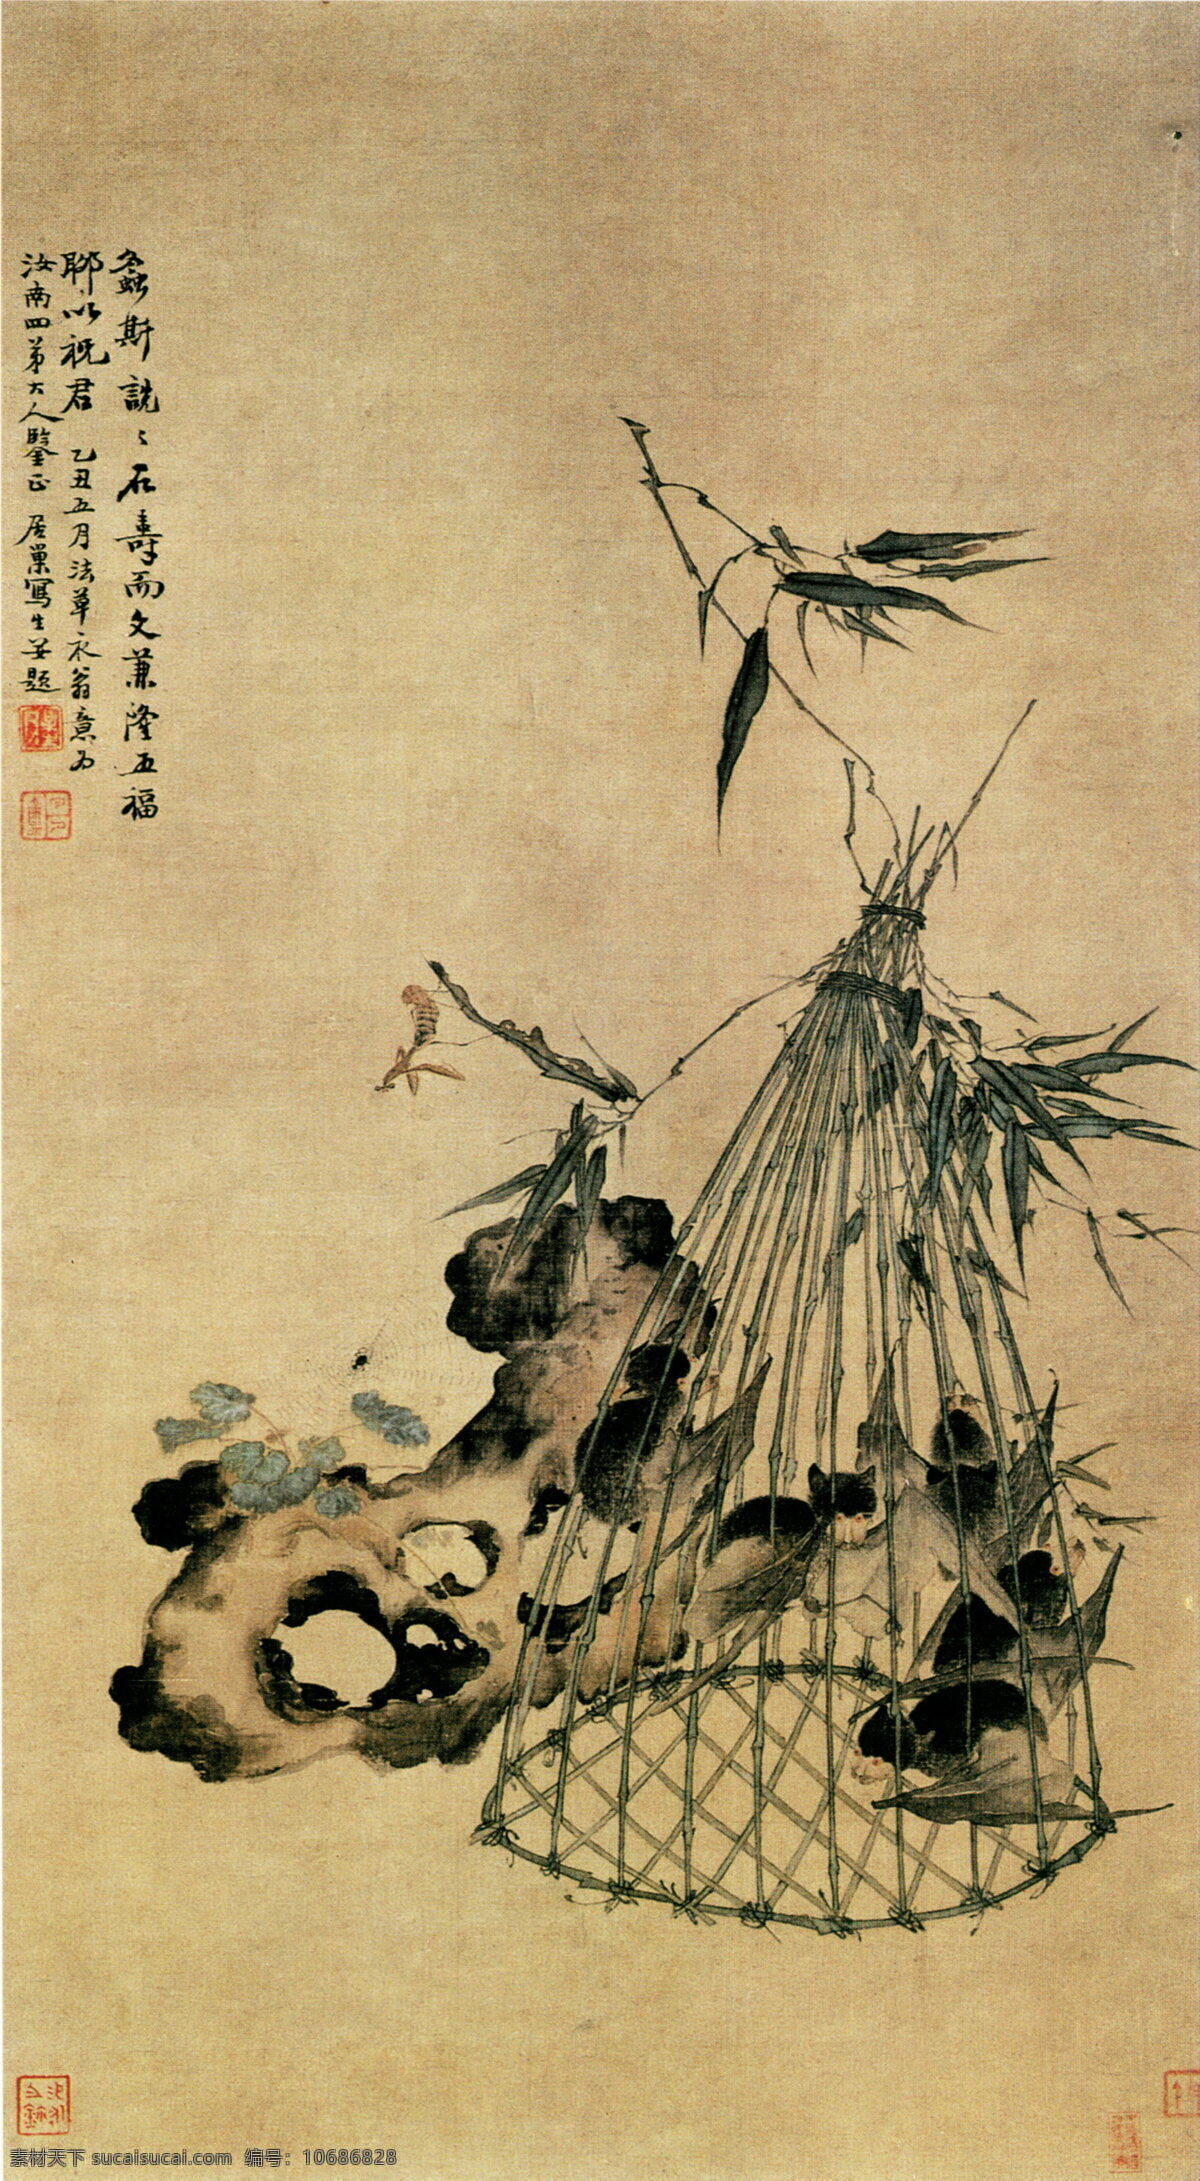 古代 插画 素材图片 油画 装饰画 国画 无框画 手绘 素描 底纹背景 彩绘 中国风 抽象 艺术 书画文字 文化艺术